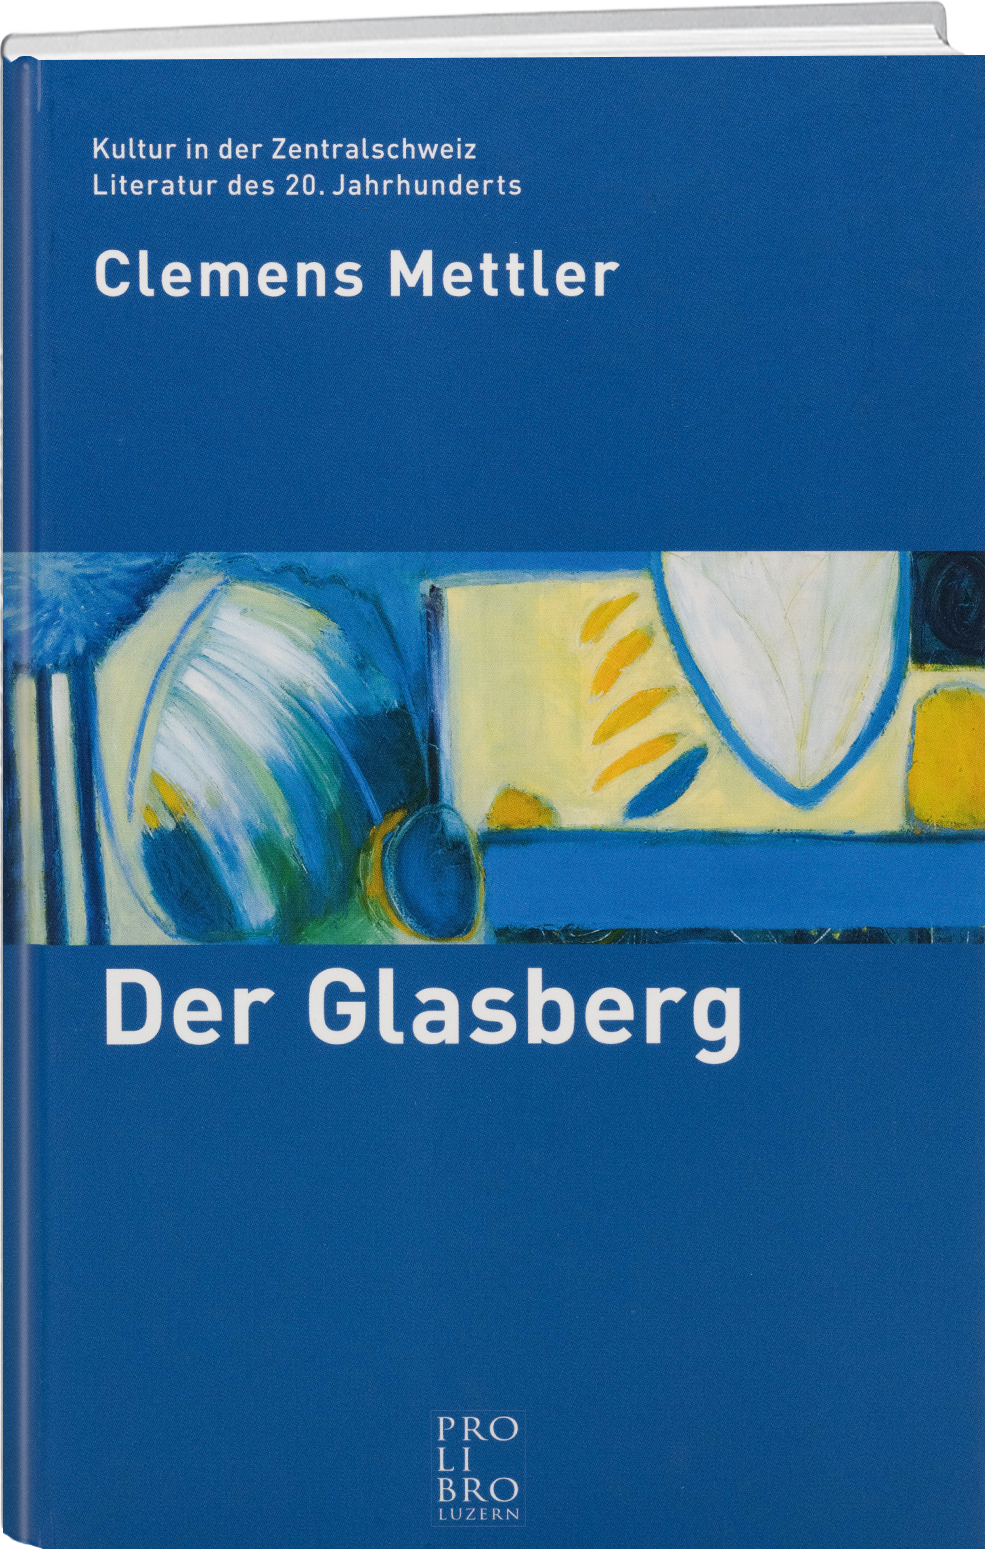 Clemens Mettler: Der Glasberg - prolibro.ch